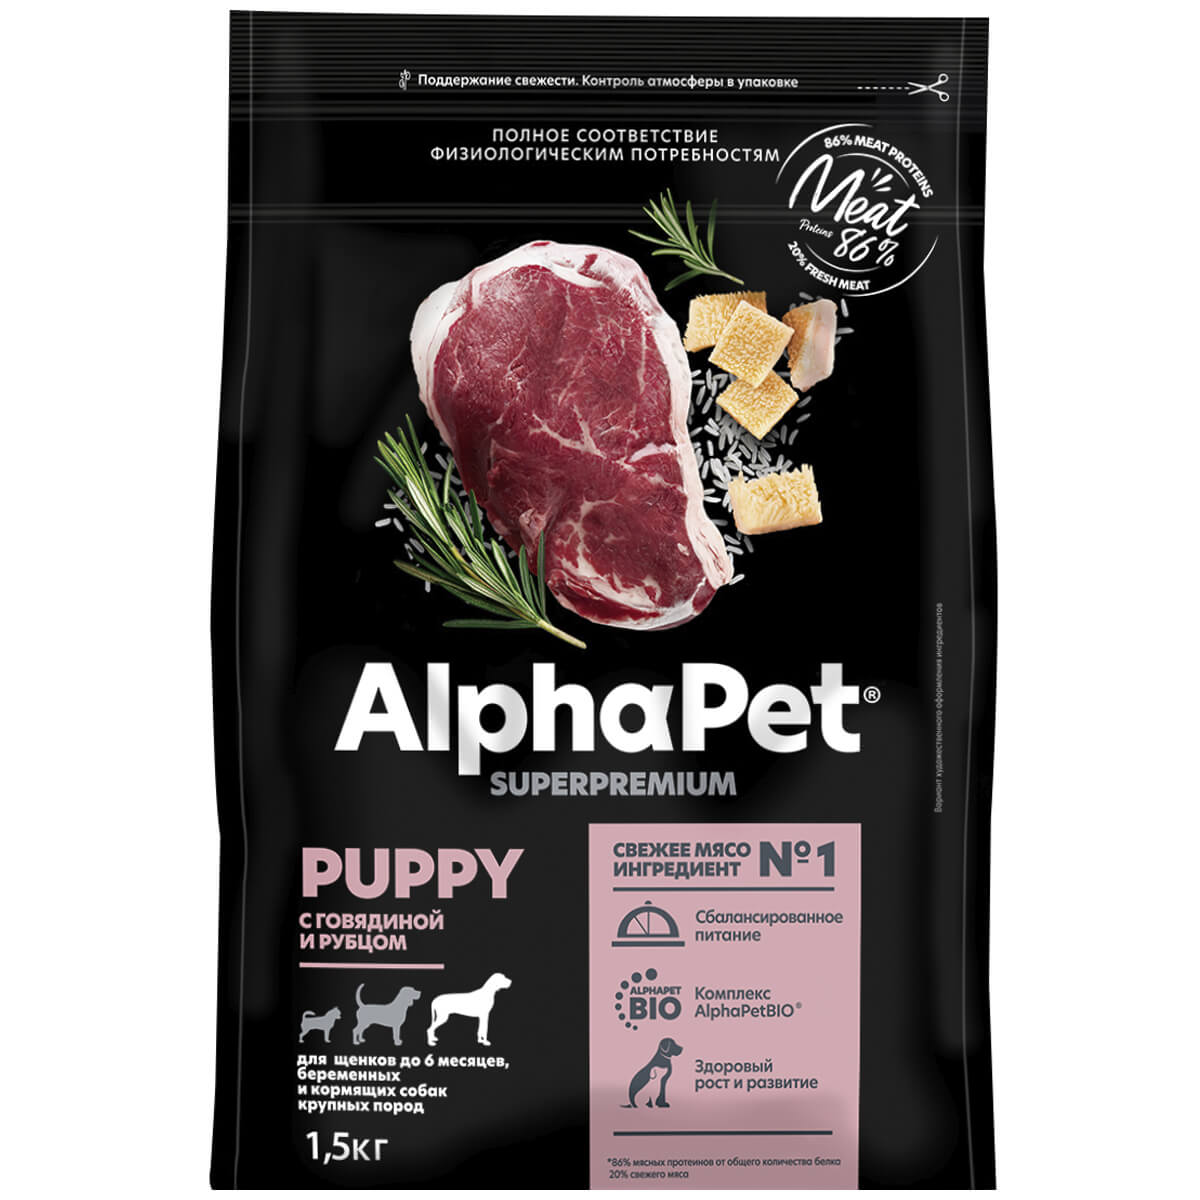 SUPERPREMIUM 1,5 кг сухой корм для щенков до 6 месяцев, беременных и кормящих собак крупных пород с говядиной и рубцом, ALPHAPET - фото 1